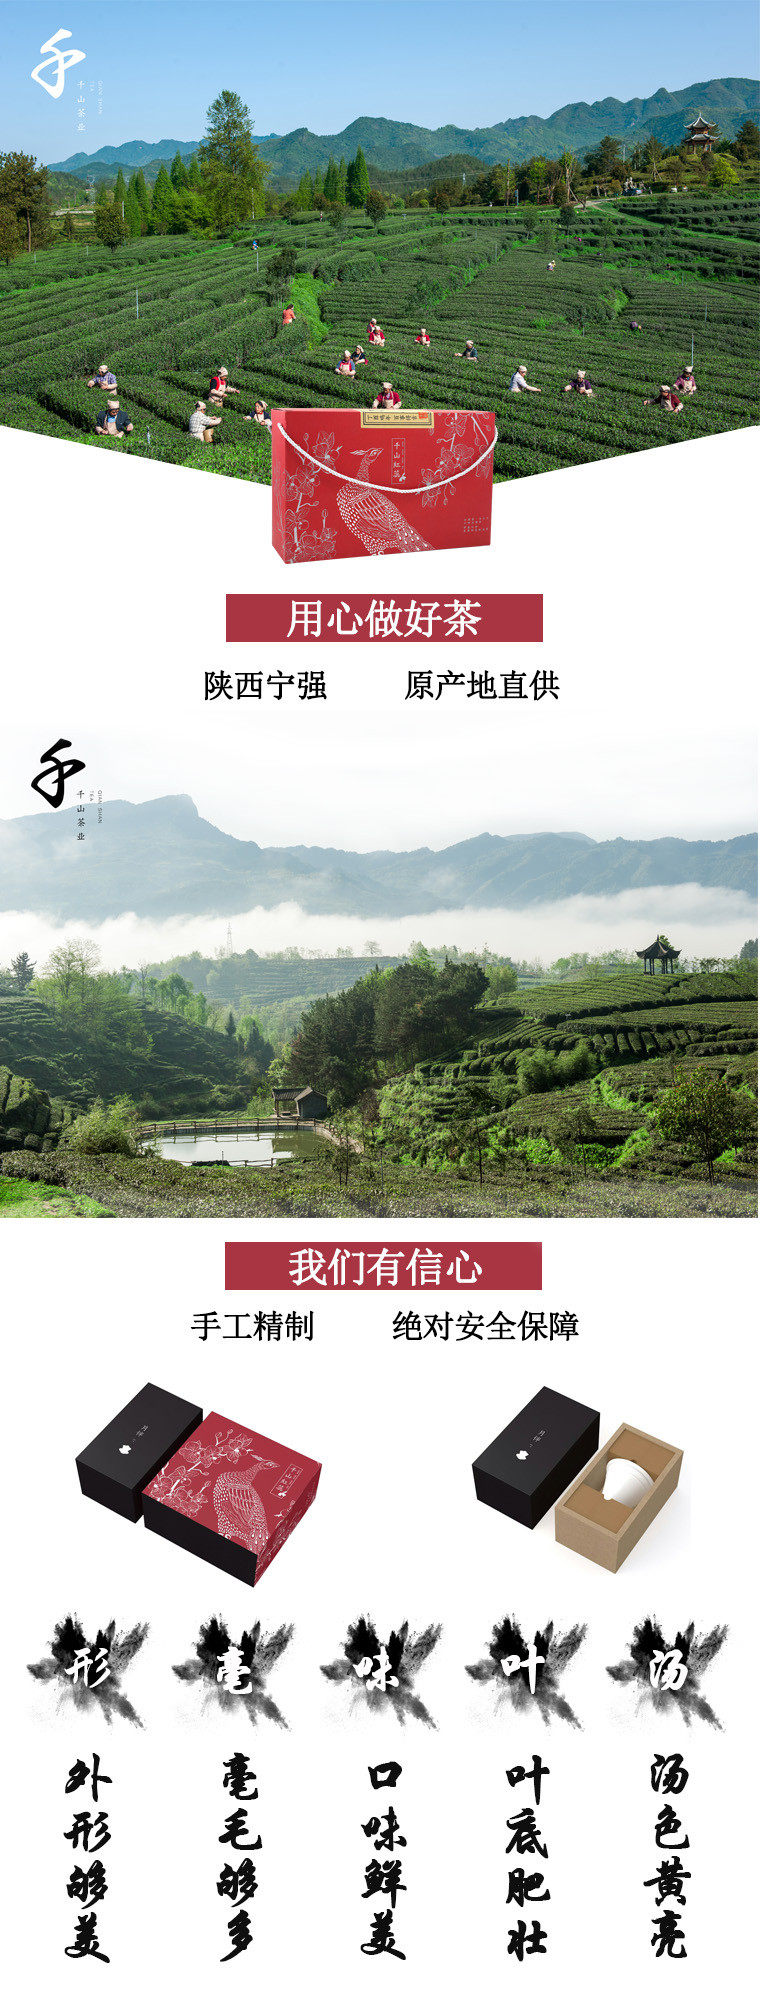 青木川/QINGMUCHUAN /千山茶业/红蕊红茶/千山红蕊(茶与茶具组合套装)108g盒